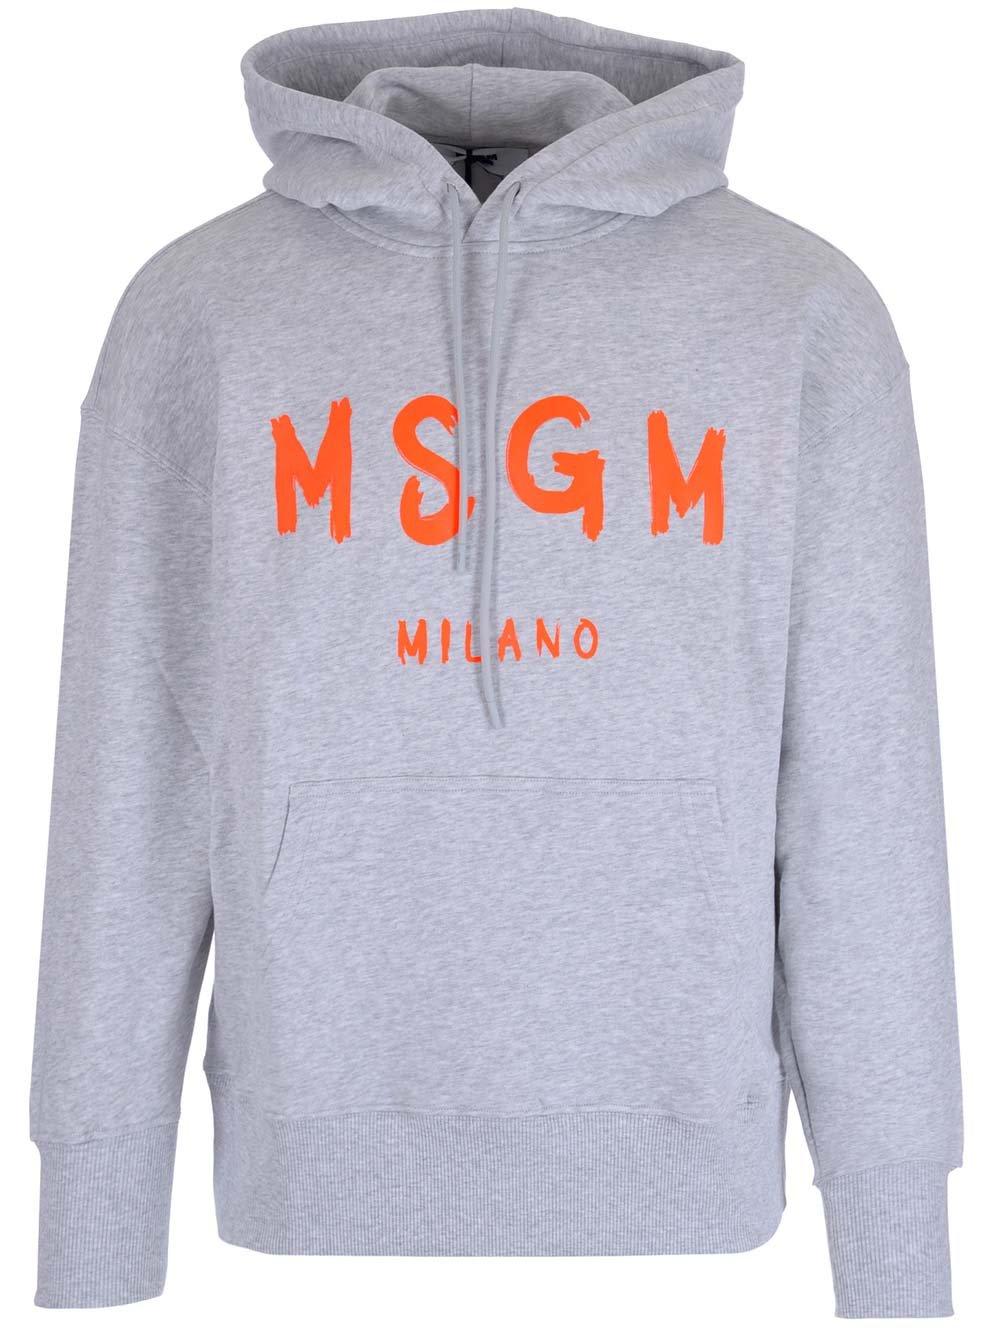 MSGM Logo Printed Long-sleeved Hoodie